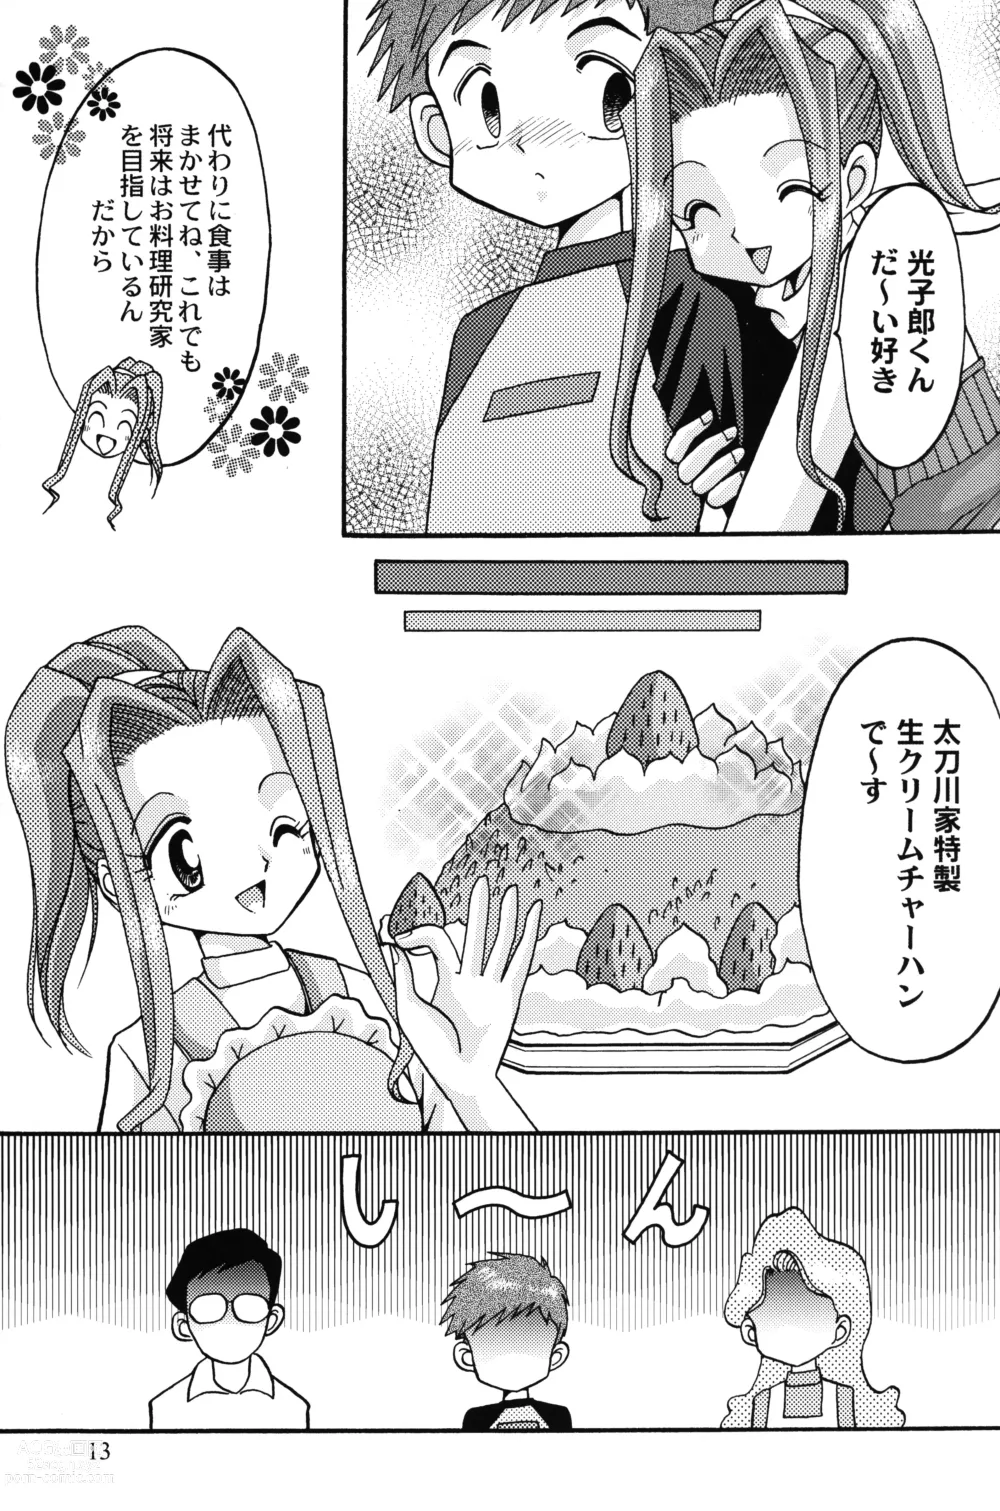 Page 12 of doujinshi Sora Mimi Hour 4